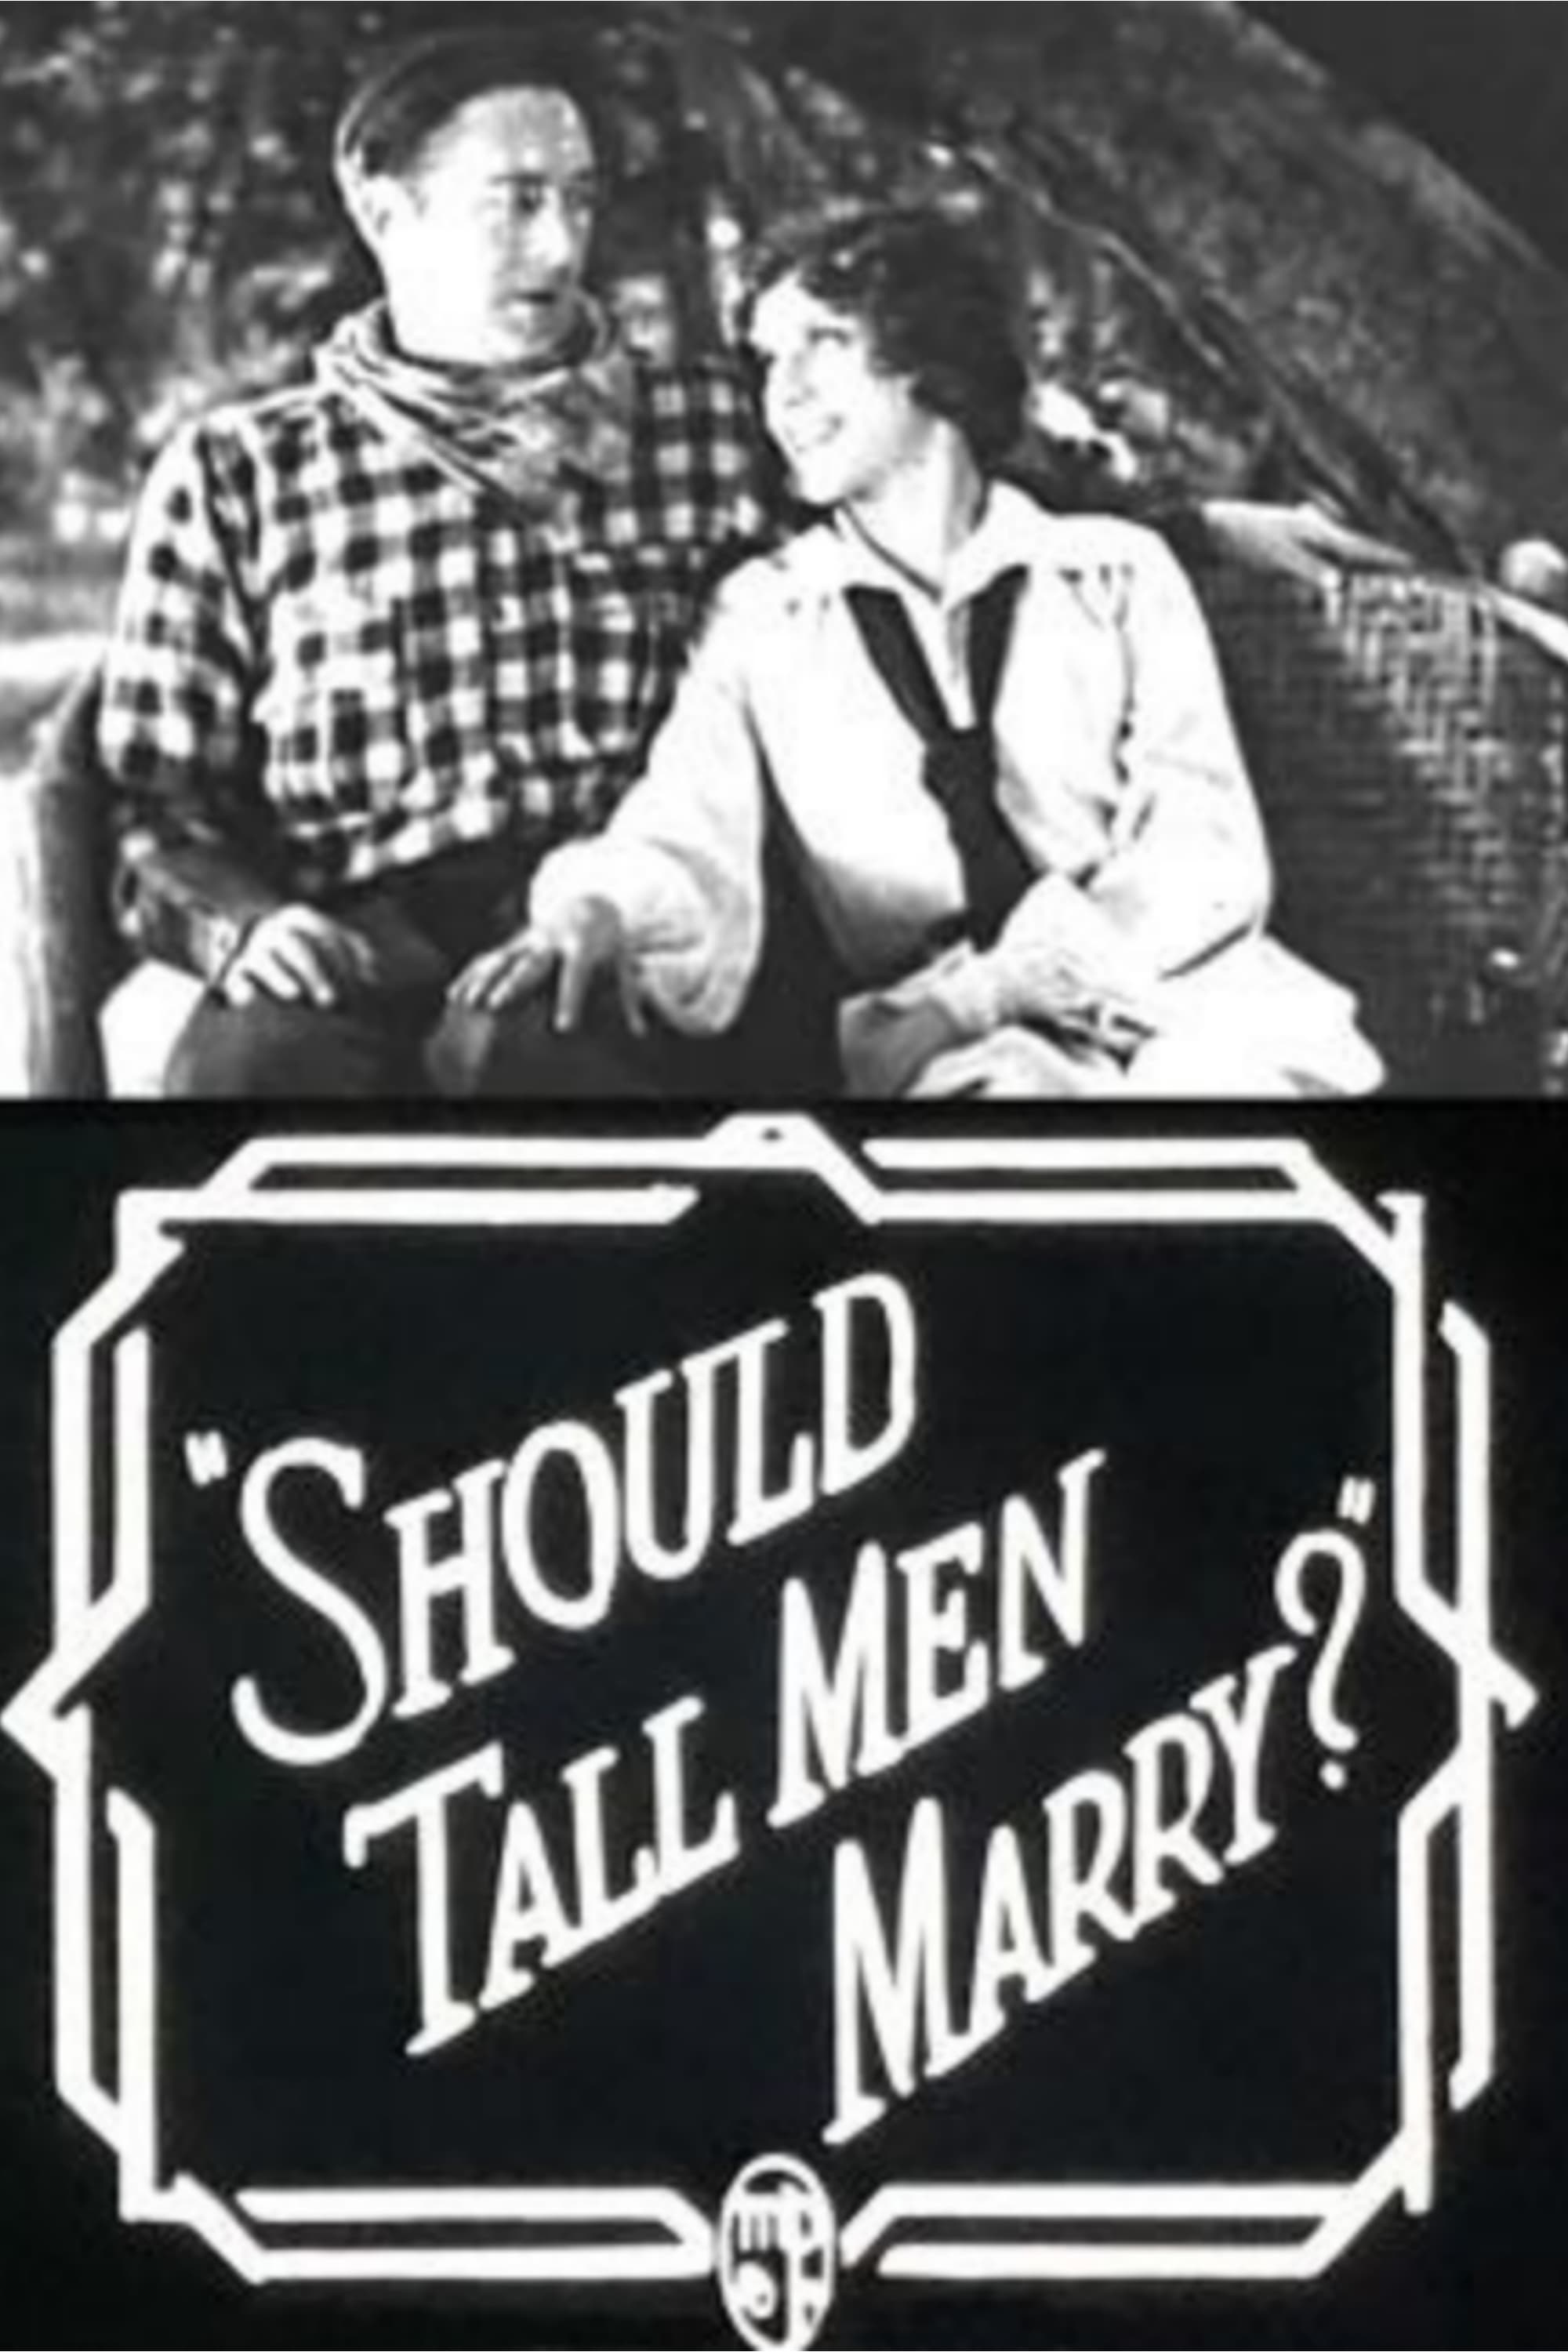 Should Tall Men Marry?